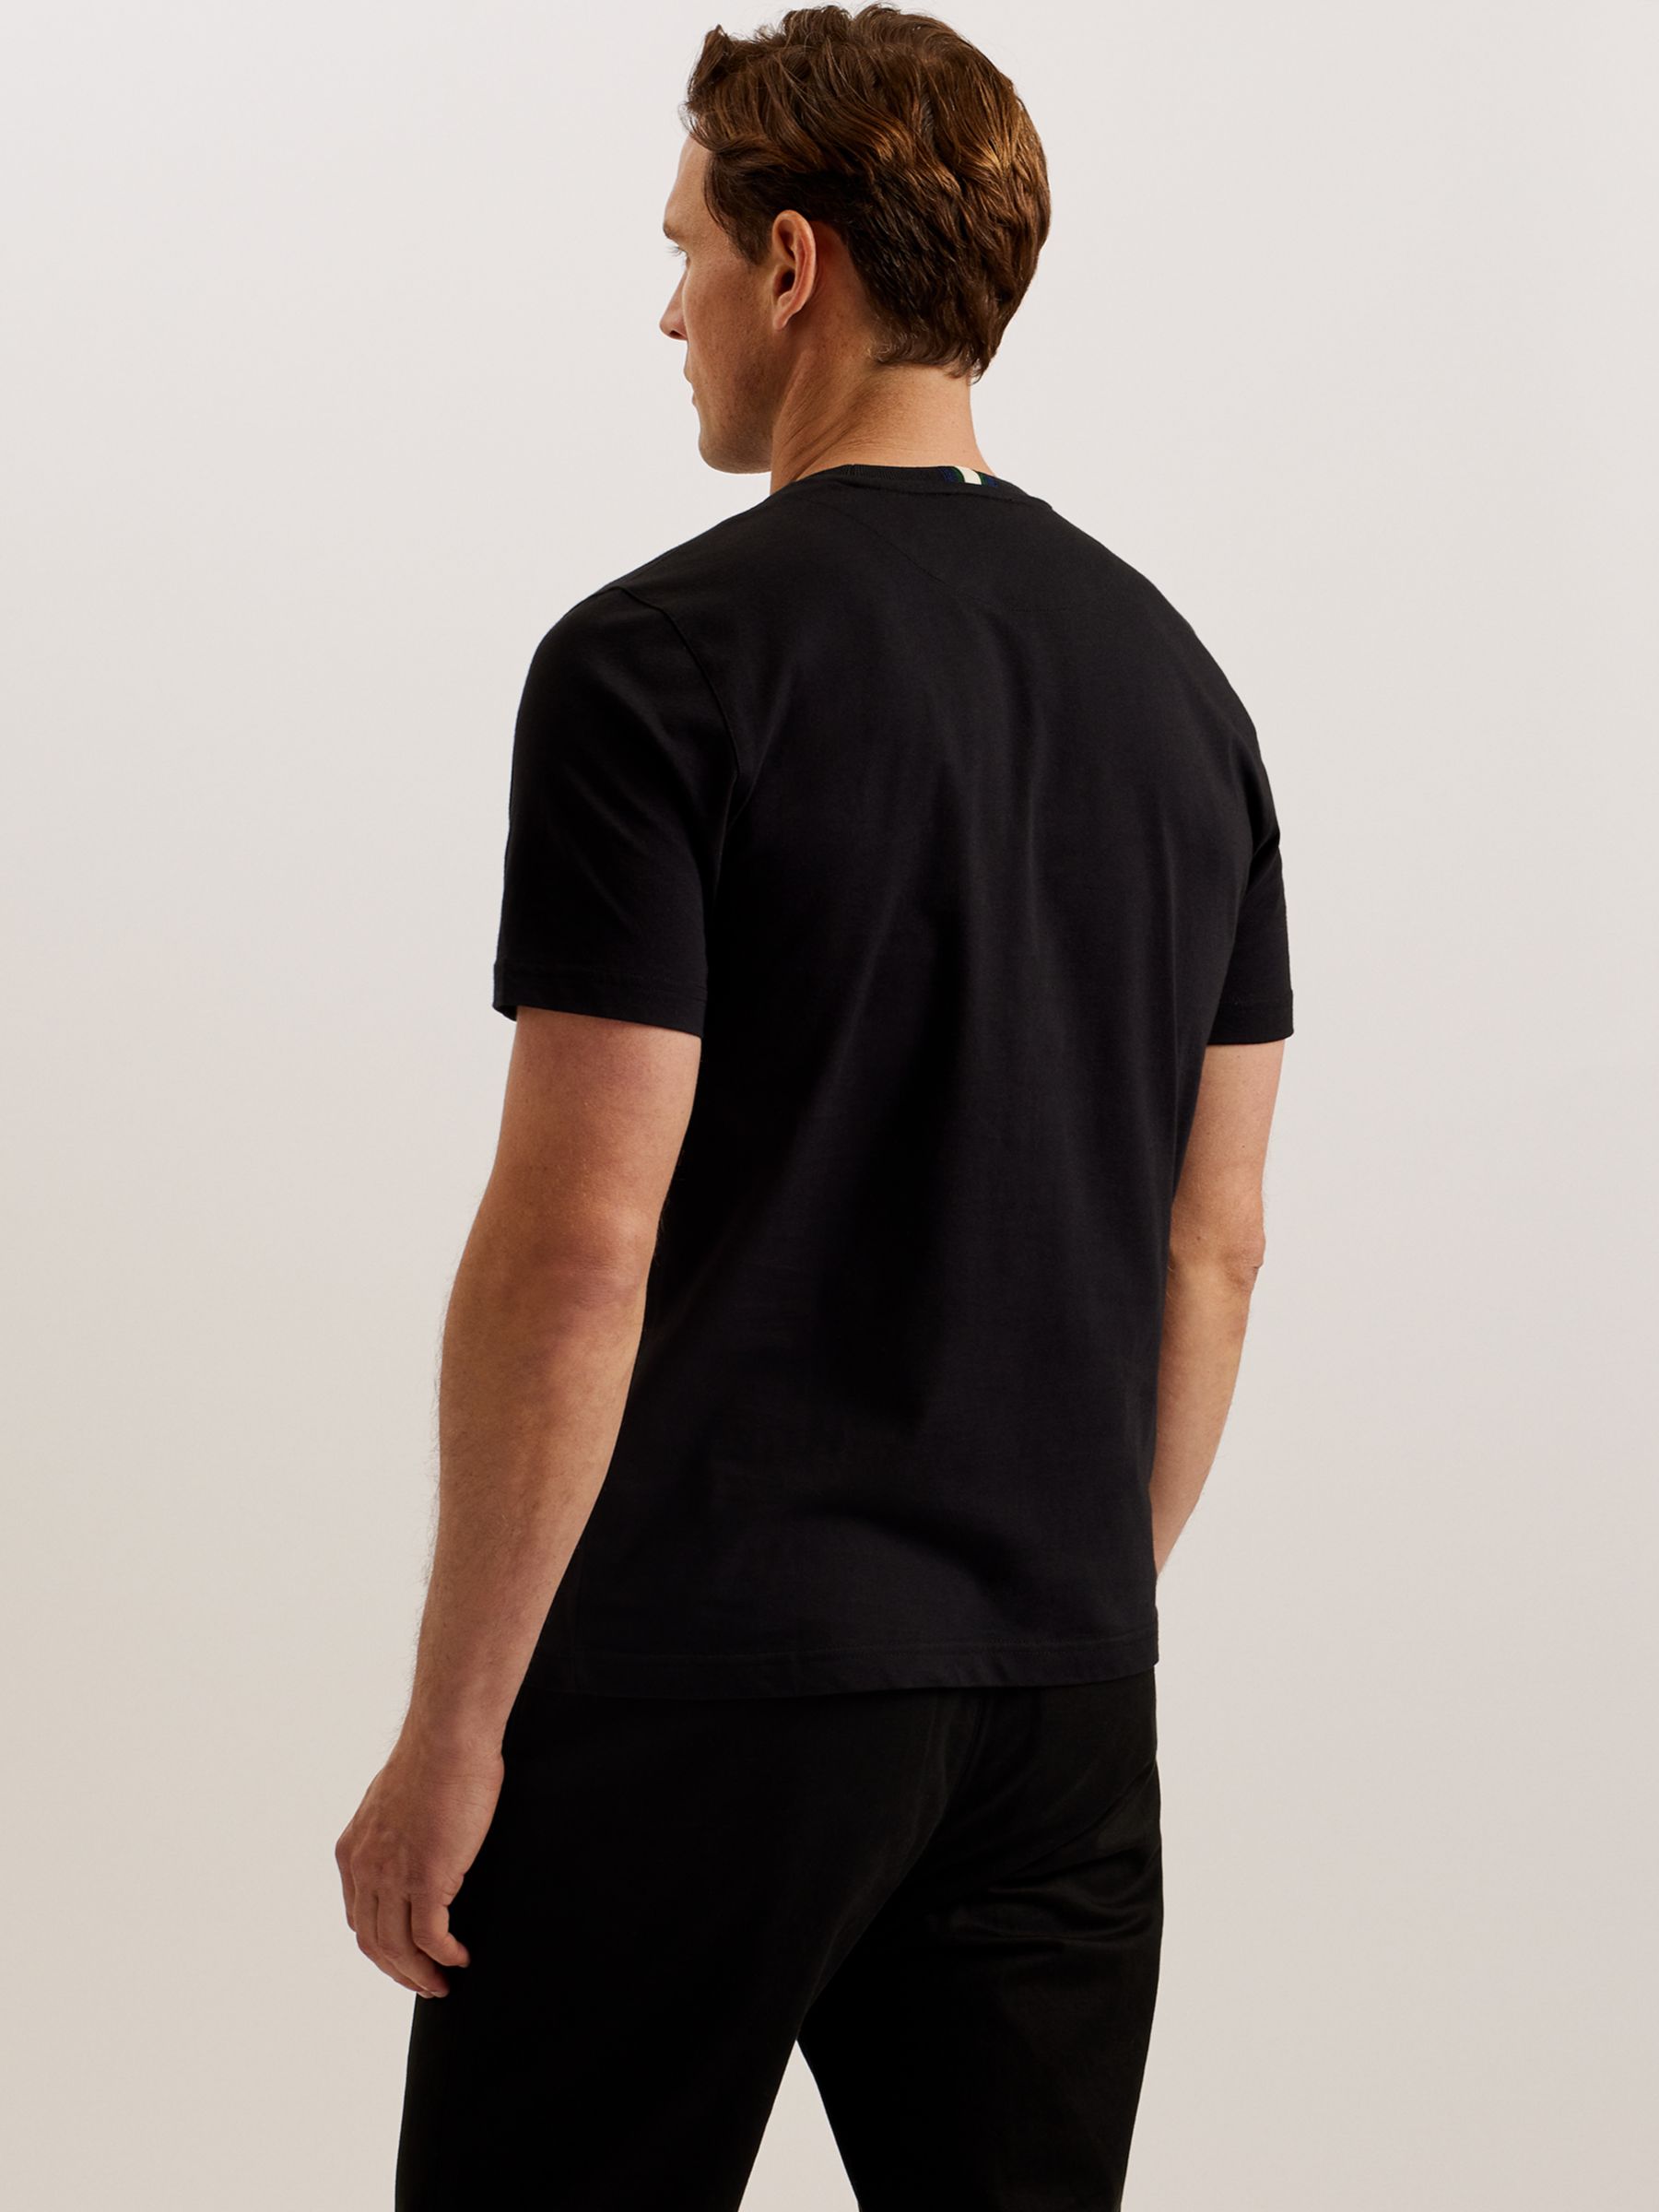 Ted Baker Wiskin Regular Branded Short Sleeve T-Shirt, Black Black, XS